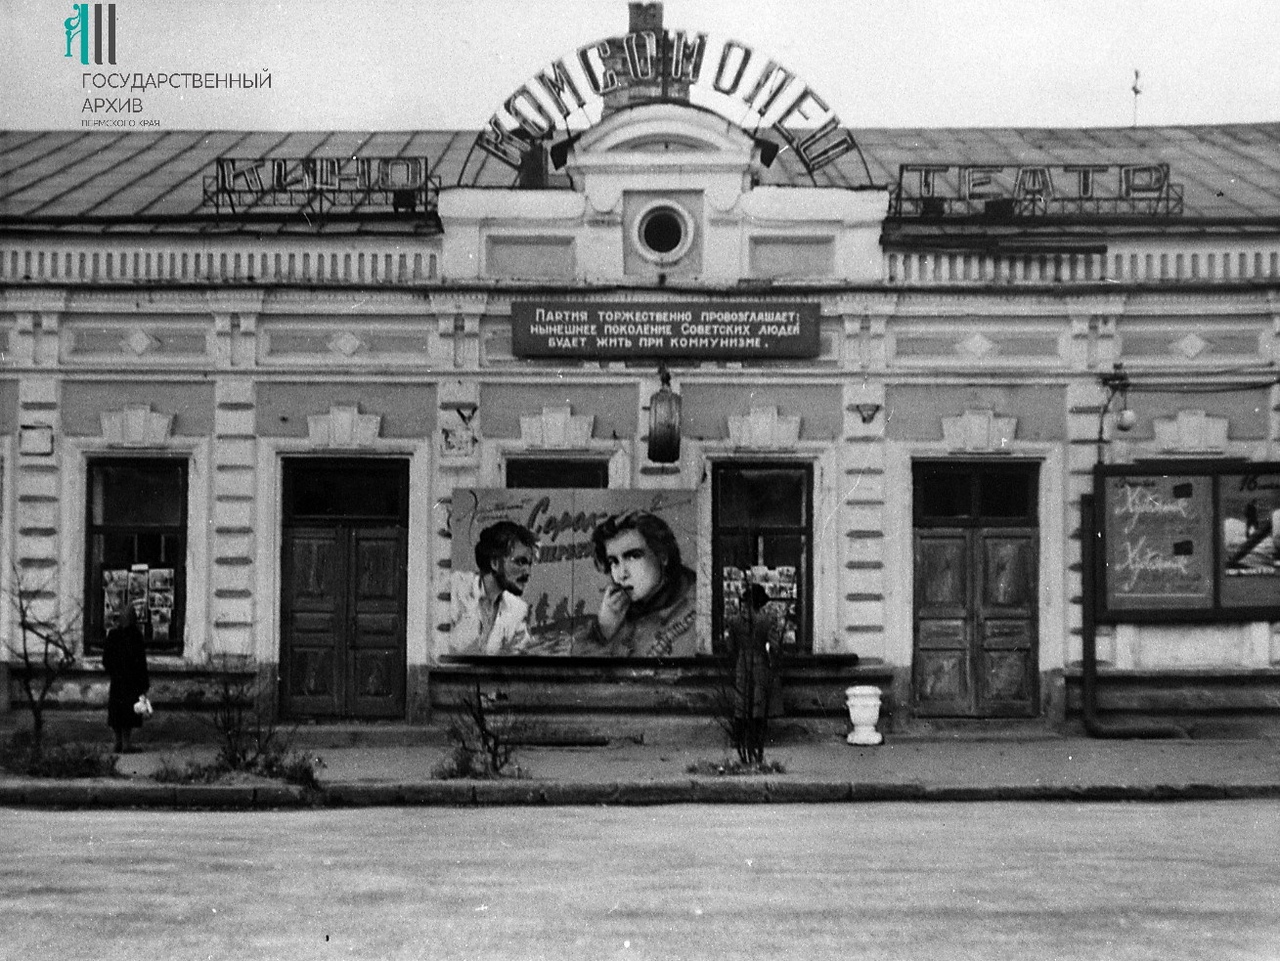 Кроме афиш, фасады советских кинотеатров украшали идеологические лозунги. Конец 1960-х годов